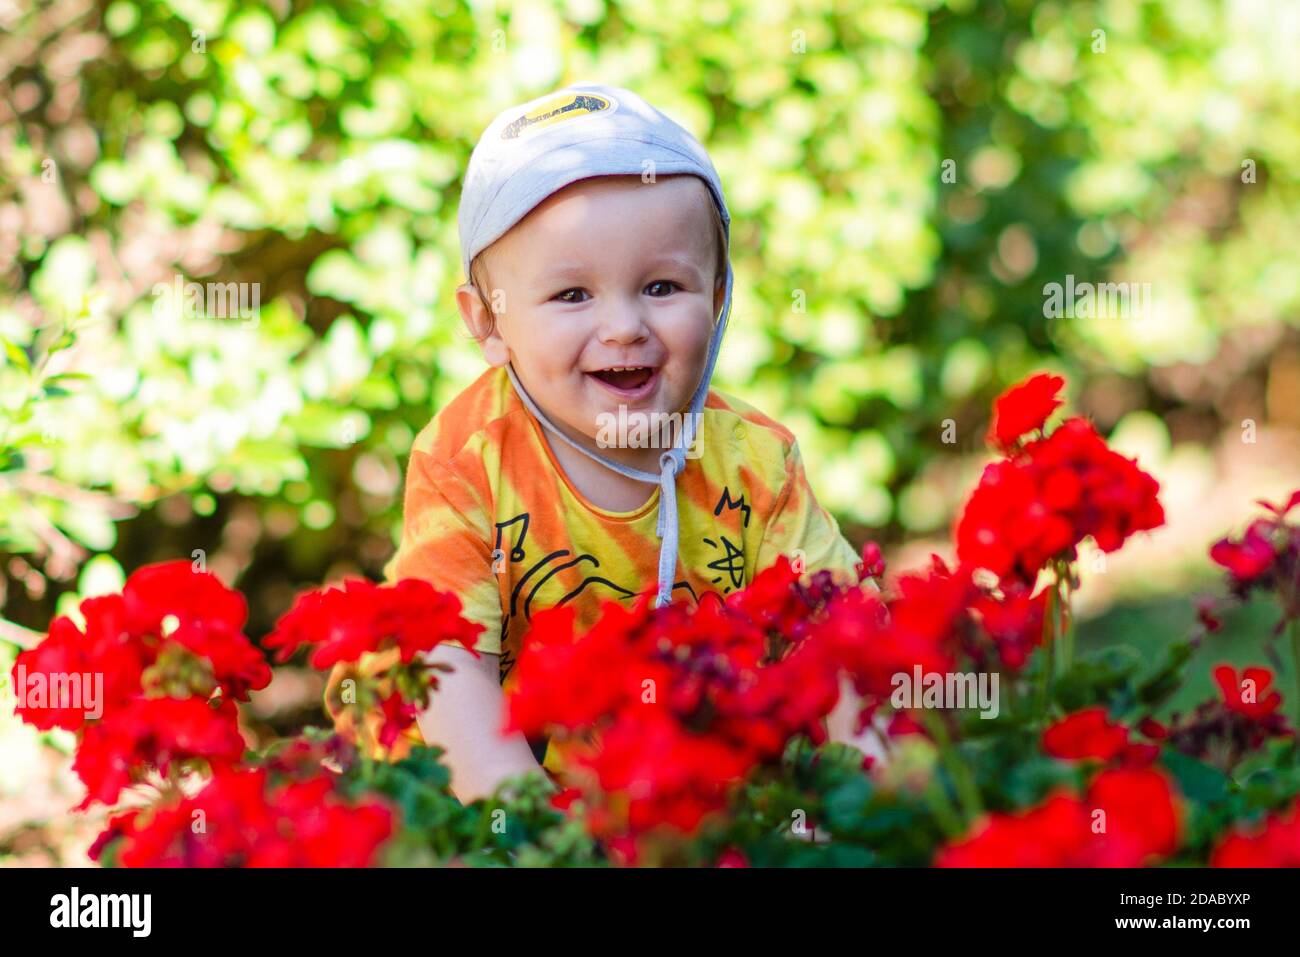 Felice bambino sorridente con cappello sorrondato da fiori rossi e. siepe verde Foto Stock